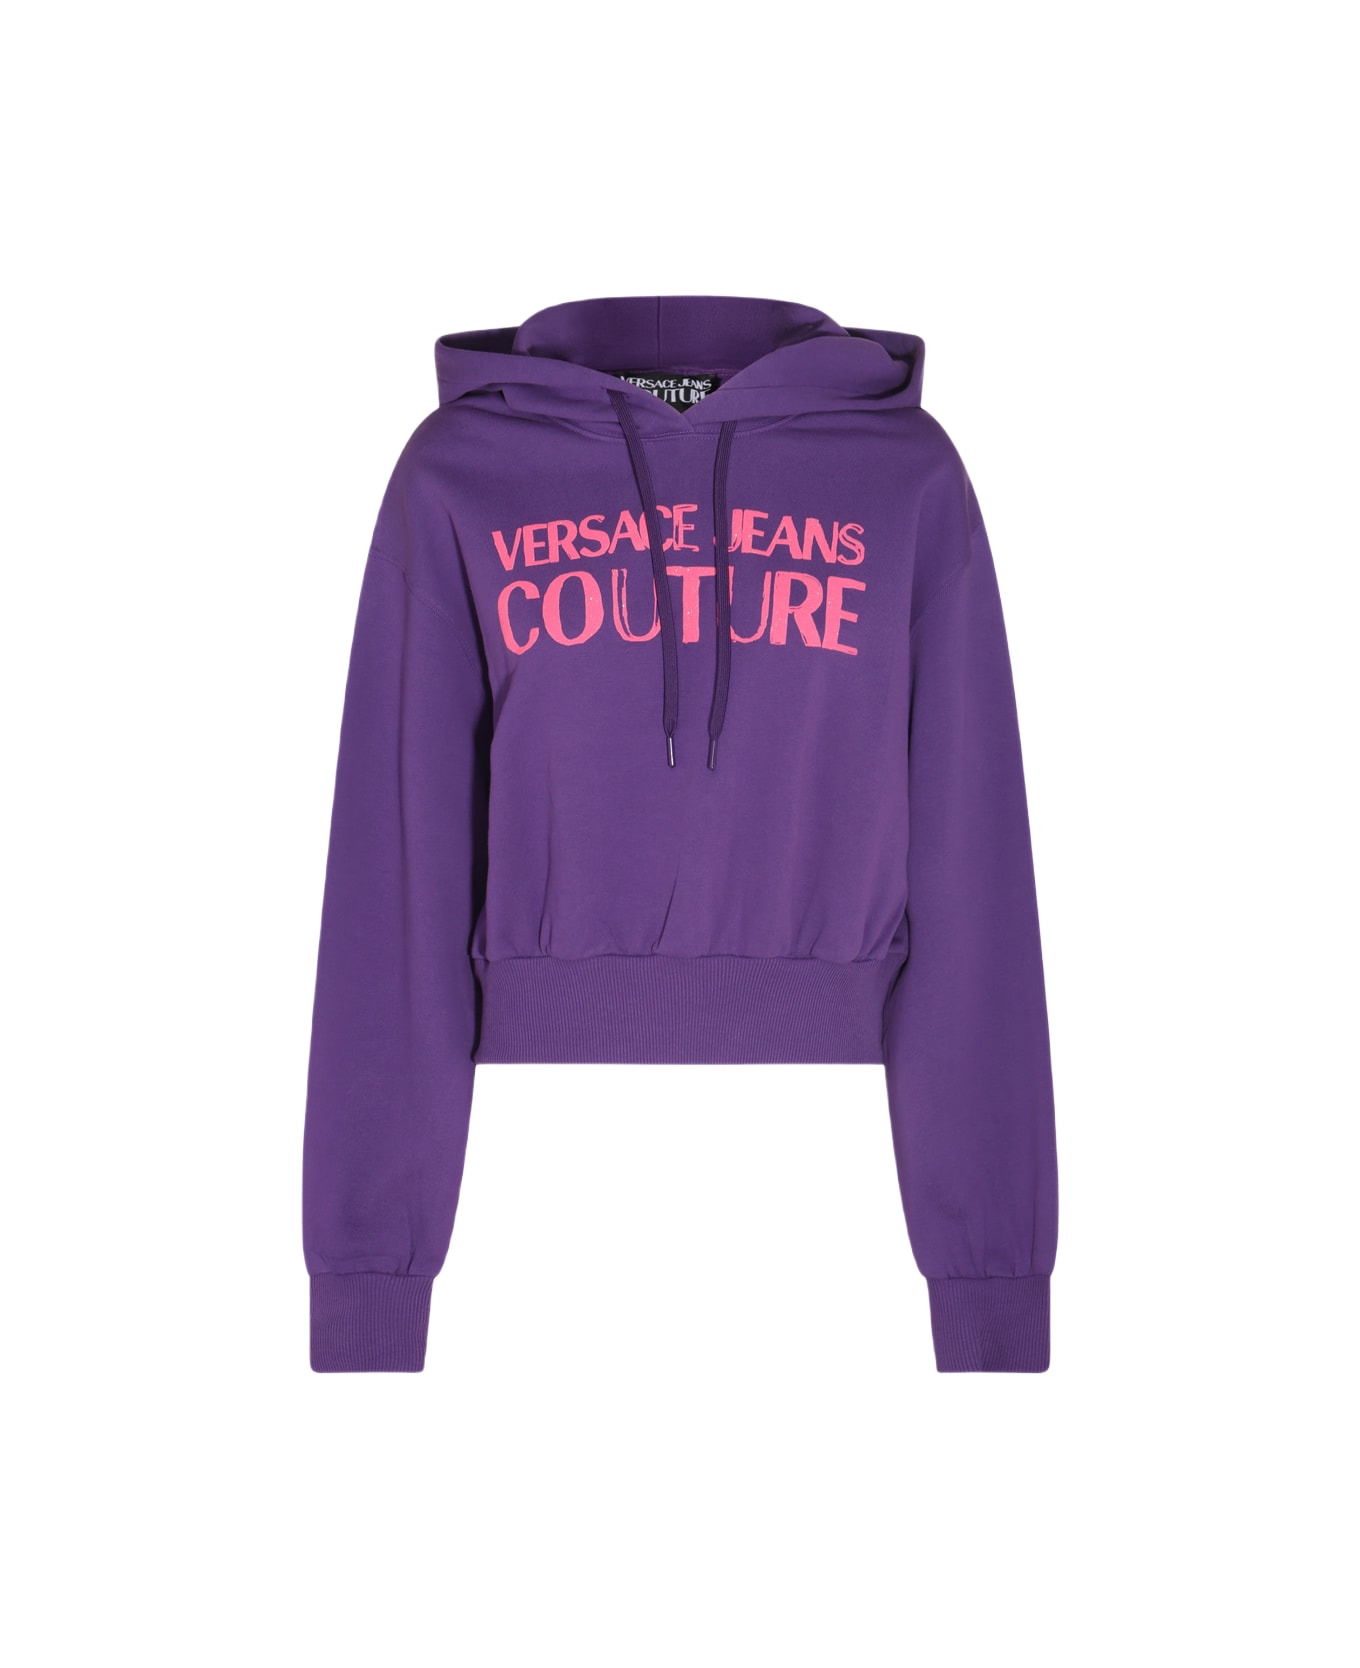 Versace Jeans Couture Violet Cotton Sweatshirt - VIOLET フリース